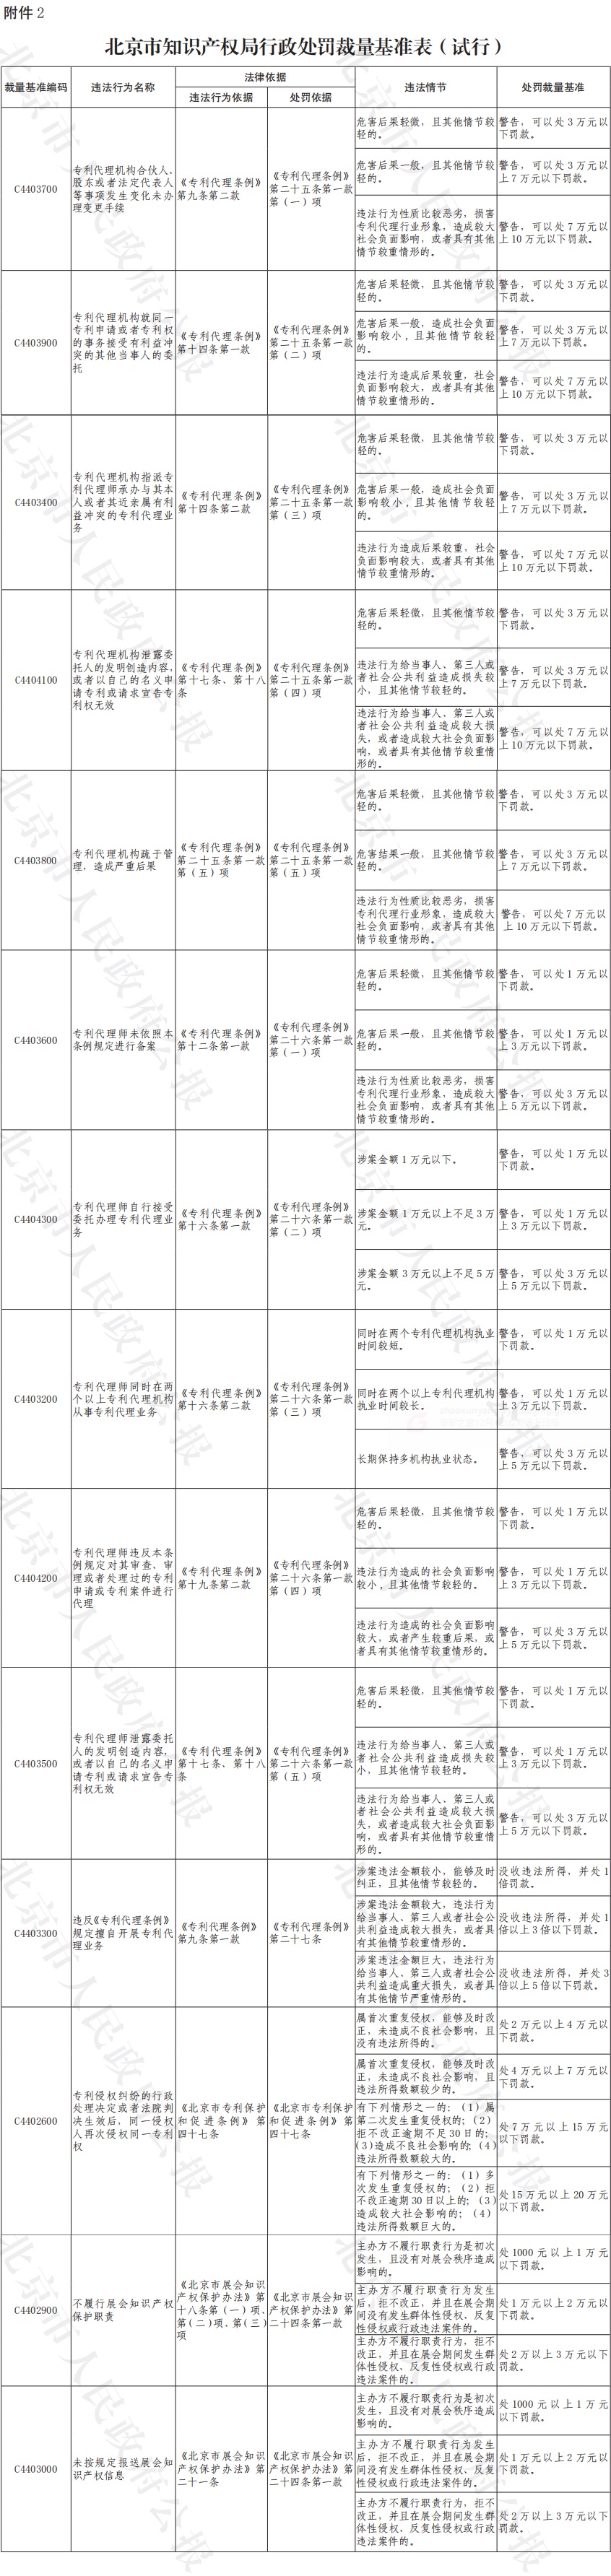 附件2：北京市知识产权局行政处罚裁量基准表(试行).jpg